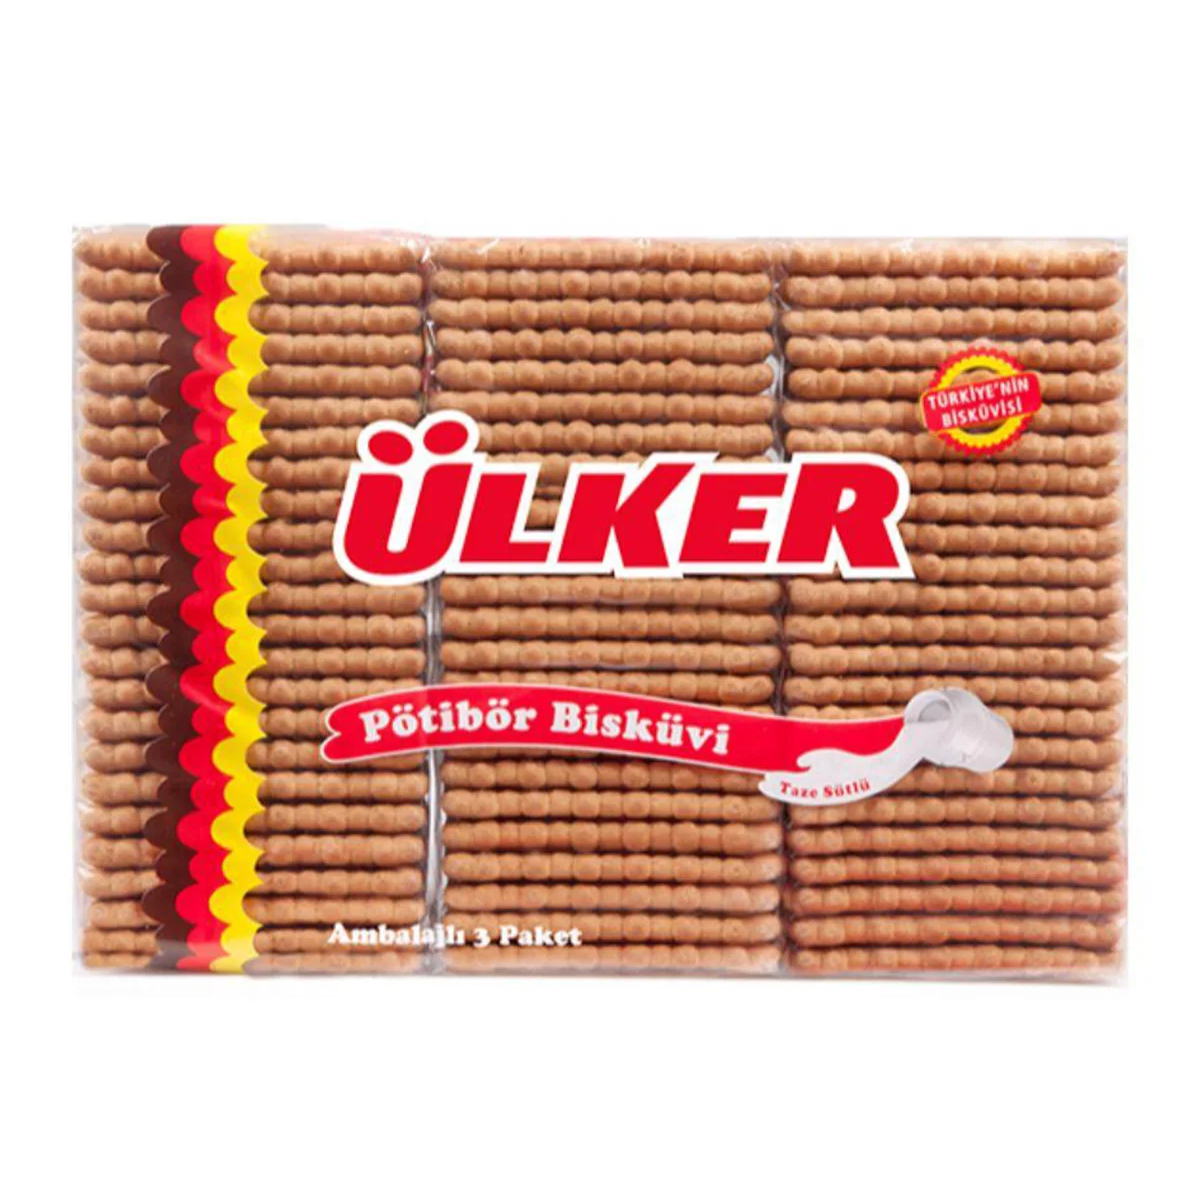 Печенье Ulker Petit Beurre, 450 г печенье сэндвич ulker в молочном шоколаде 8х30 г